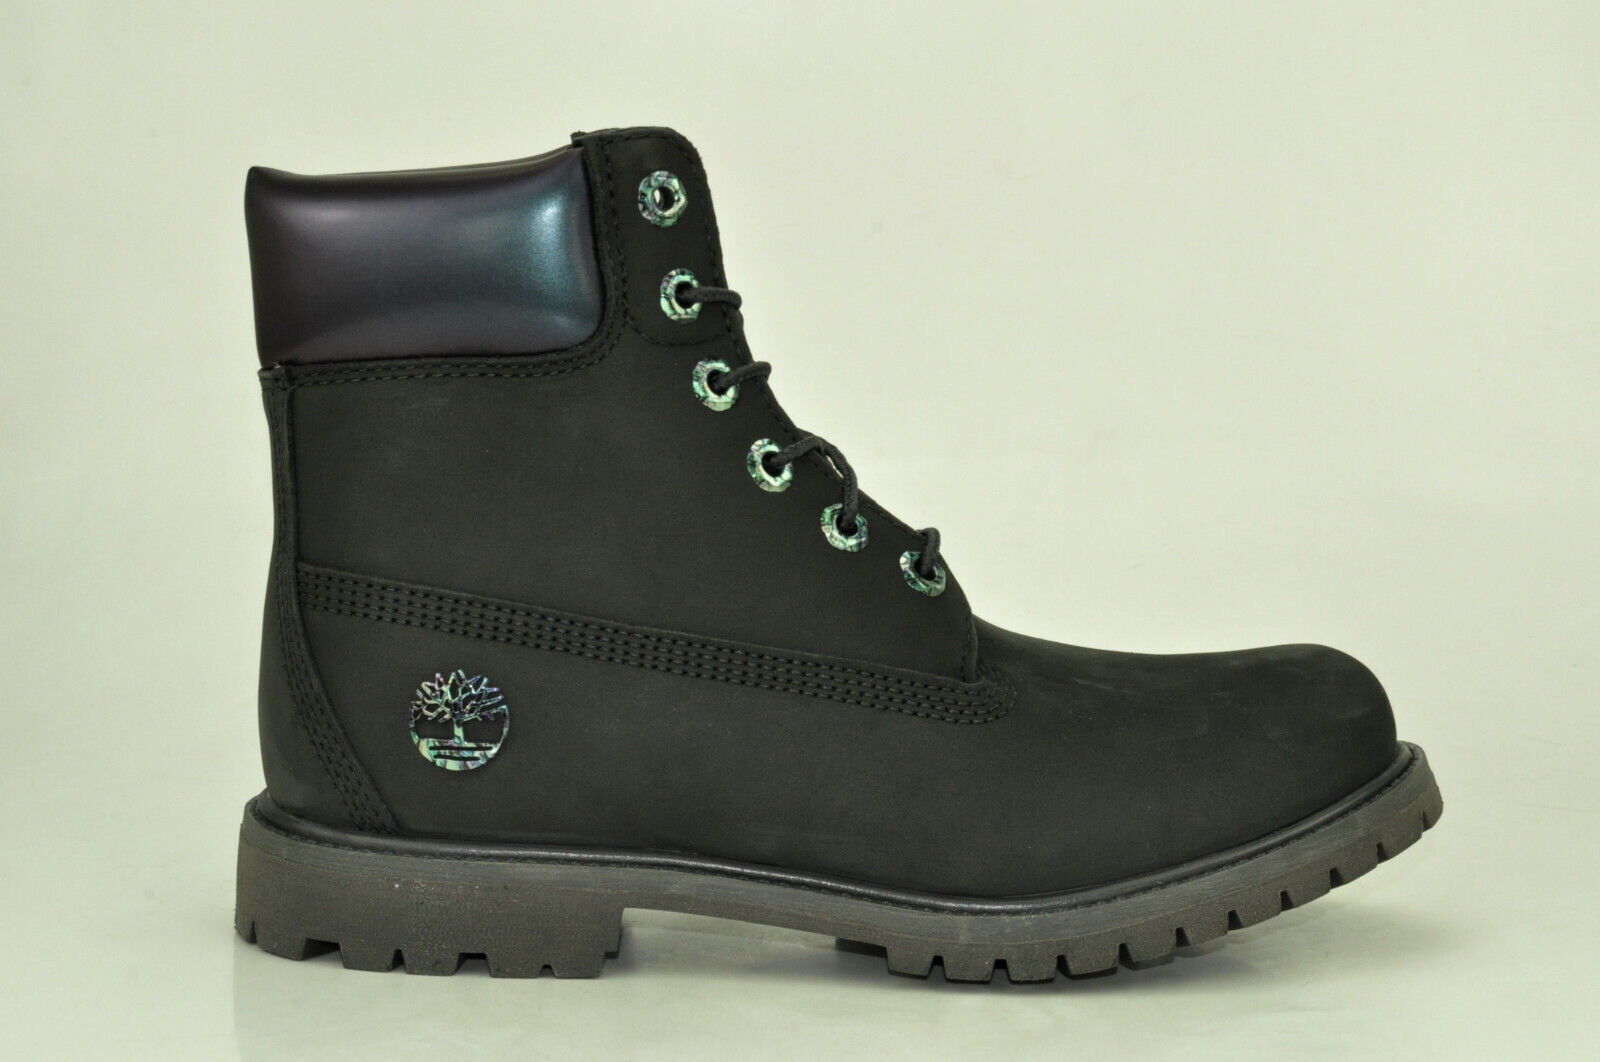 Timberland 6 Inch Premium Boots Waterproof Stiefel Damen Schnürstiefel A24J8